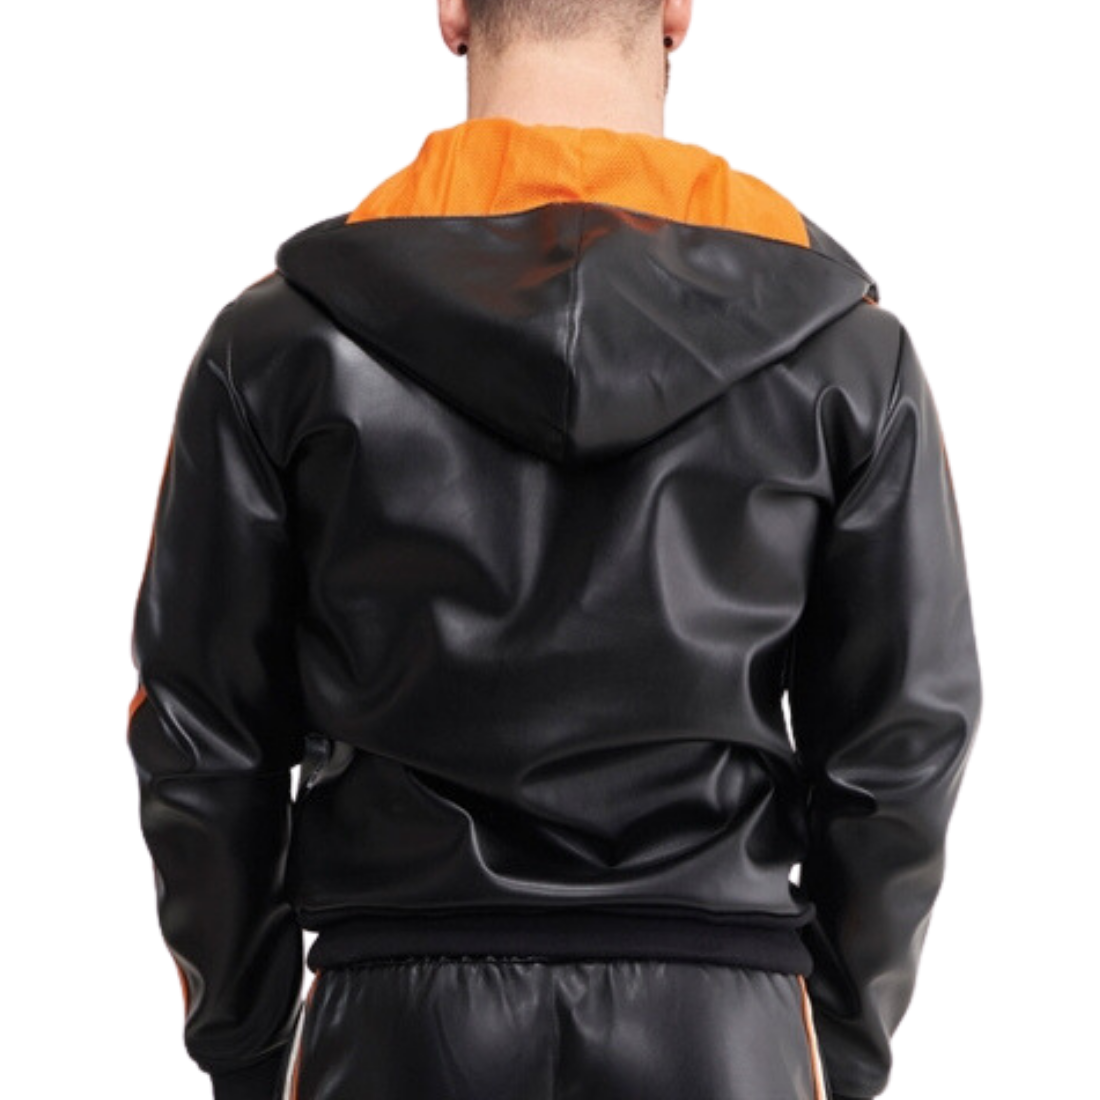 Zwarte kunstleren trainingsjack met oranje en witte strepen, ontworpen door Mr. Riegillio, te koop bij Flavourez.